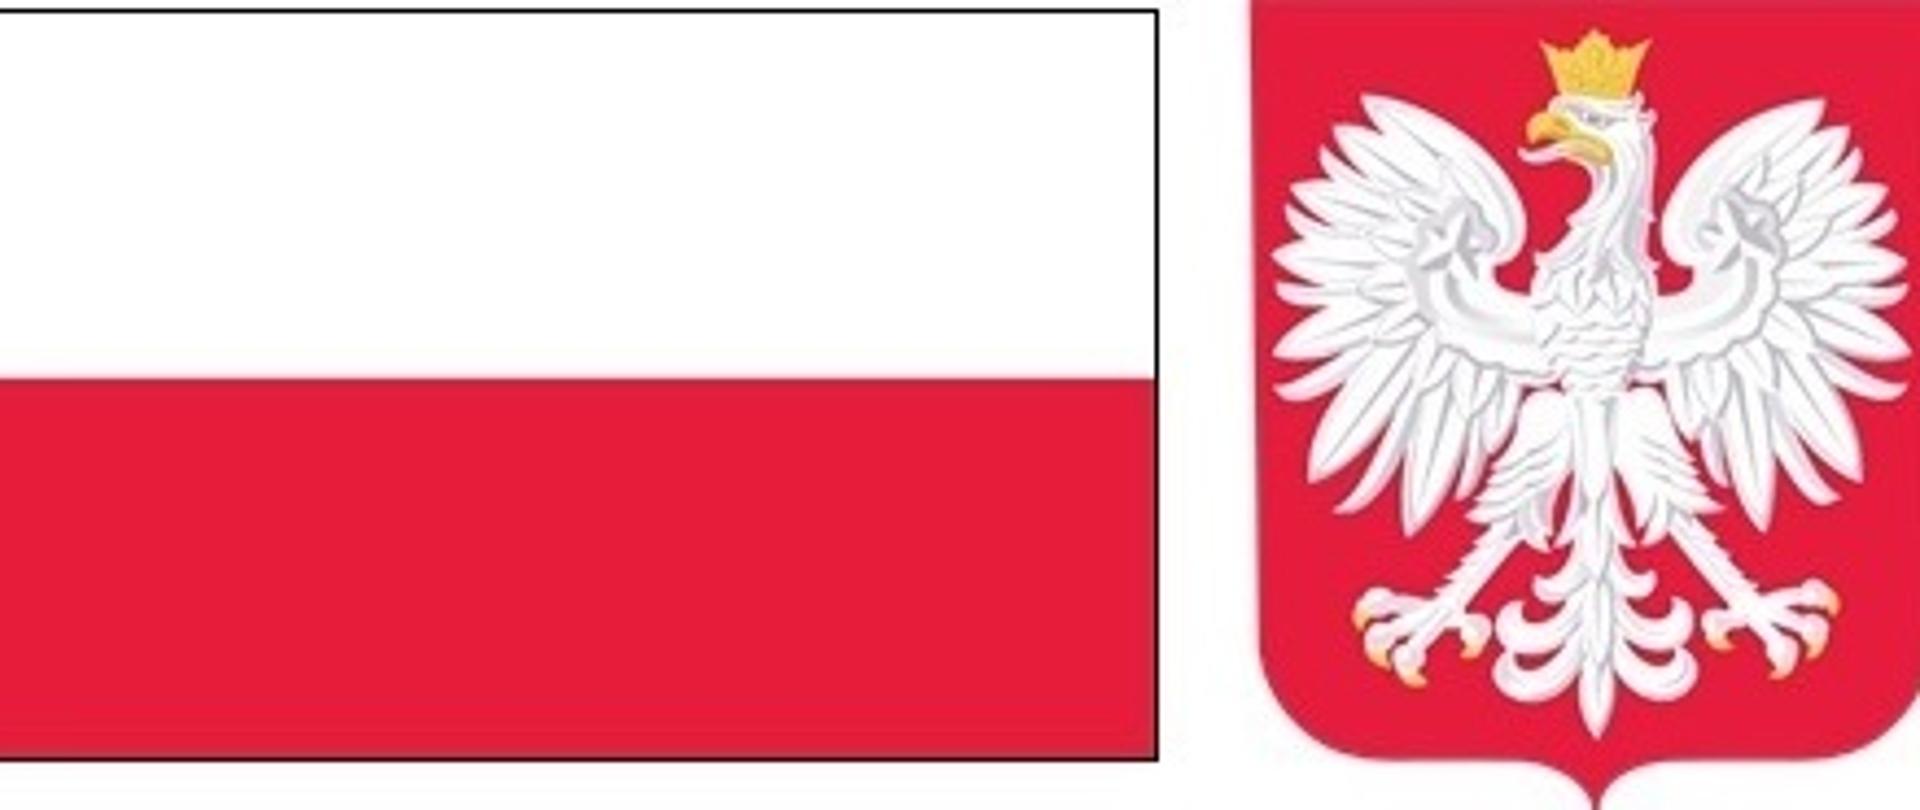 Po lewej flaga Polski, po prawej godło Polski